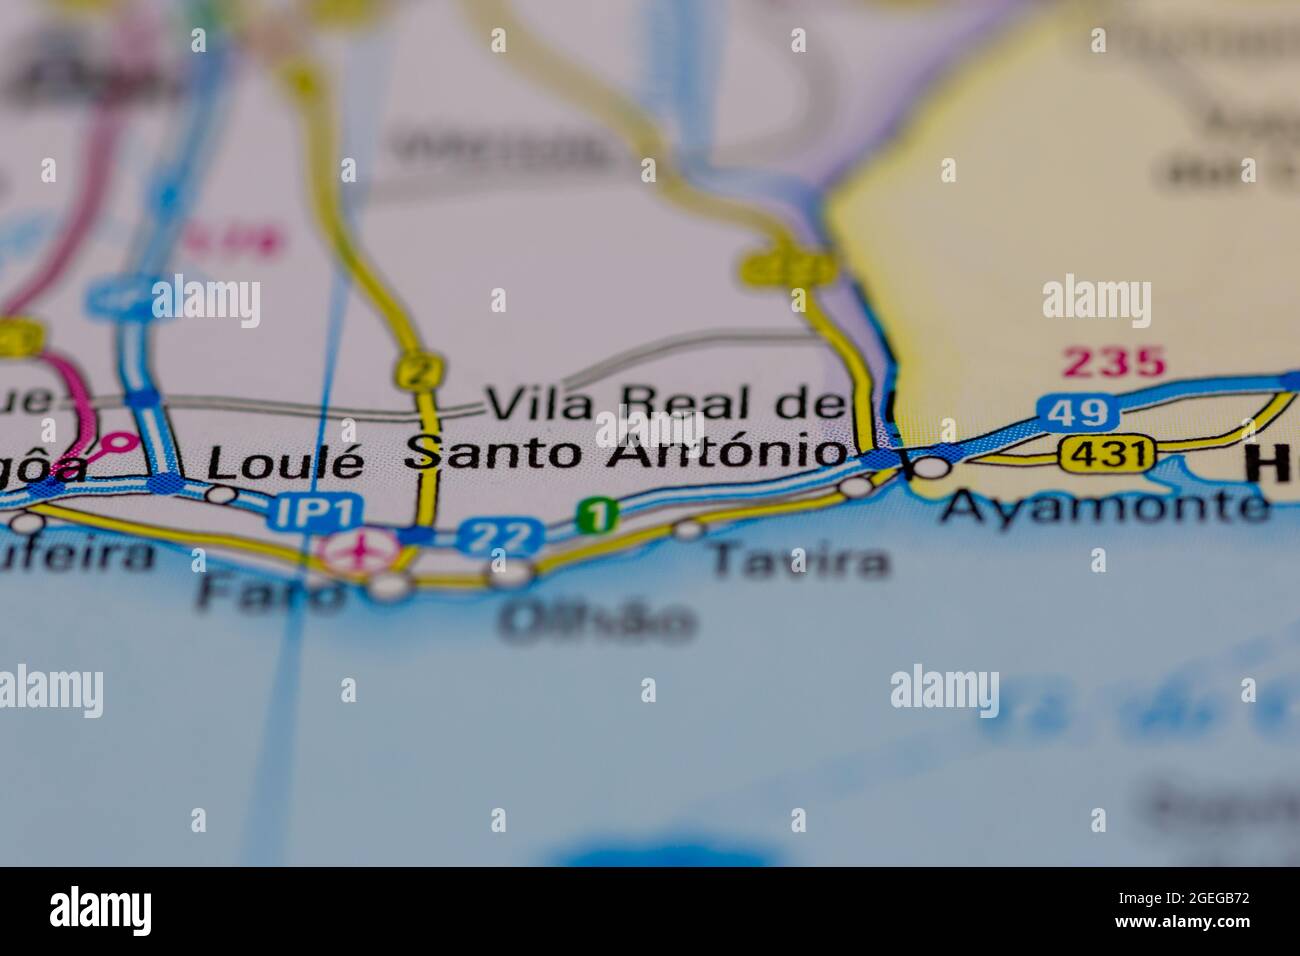 Vila Real de Santo Antonio Portugal indiqué sur une carte routière ou une carte de la géographie Banque D'Images